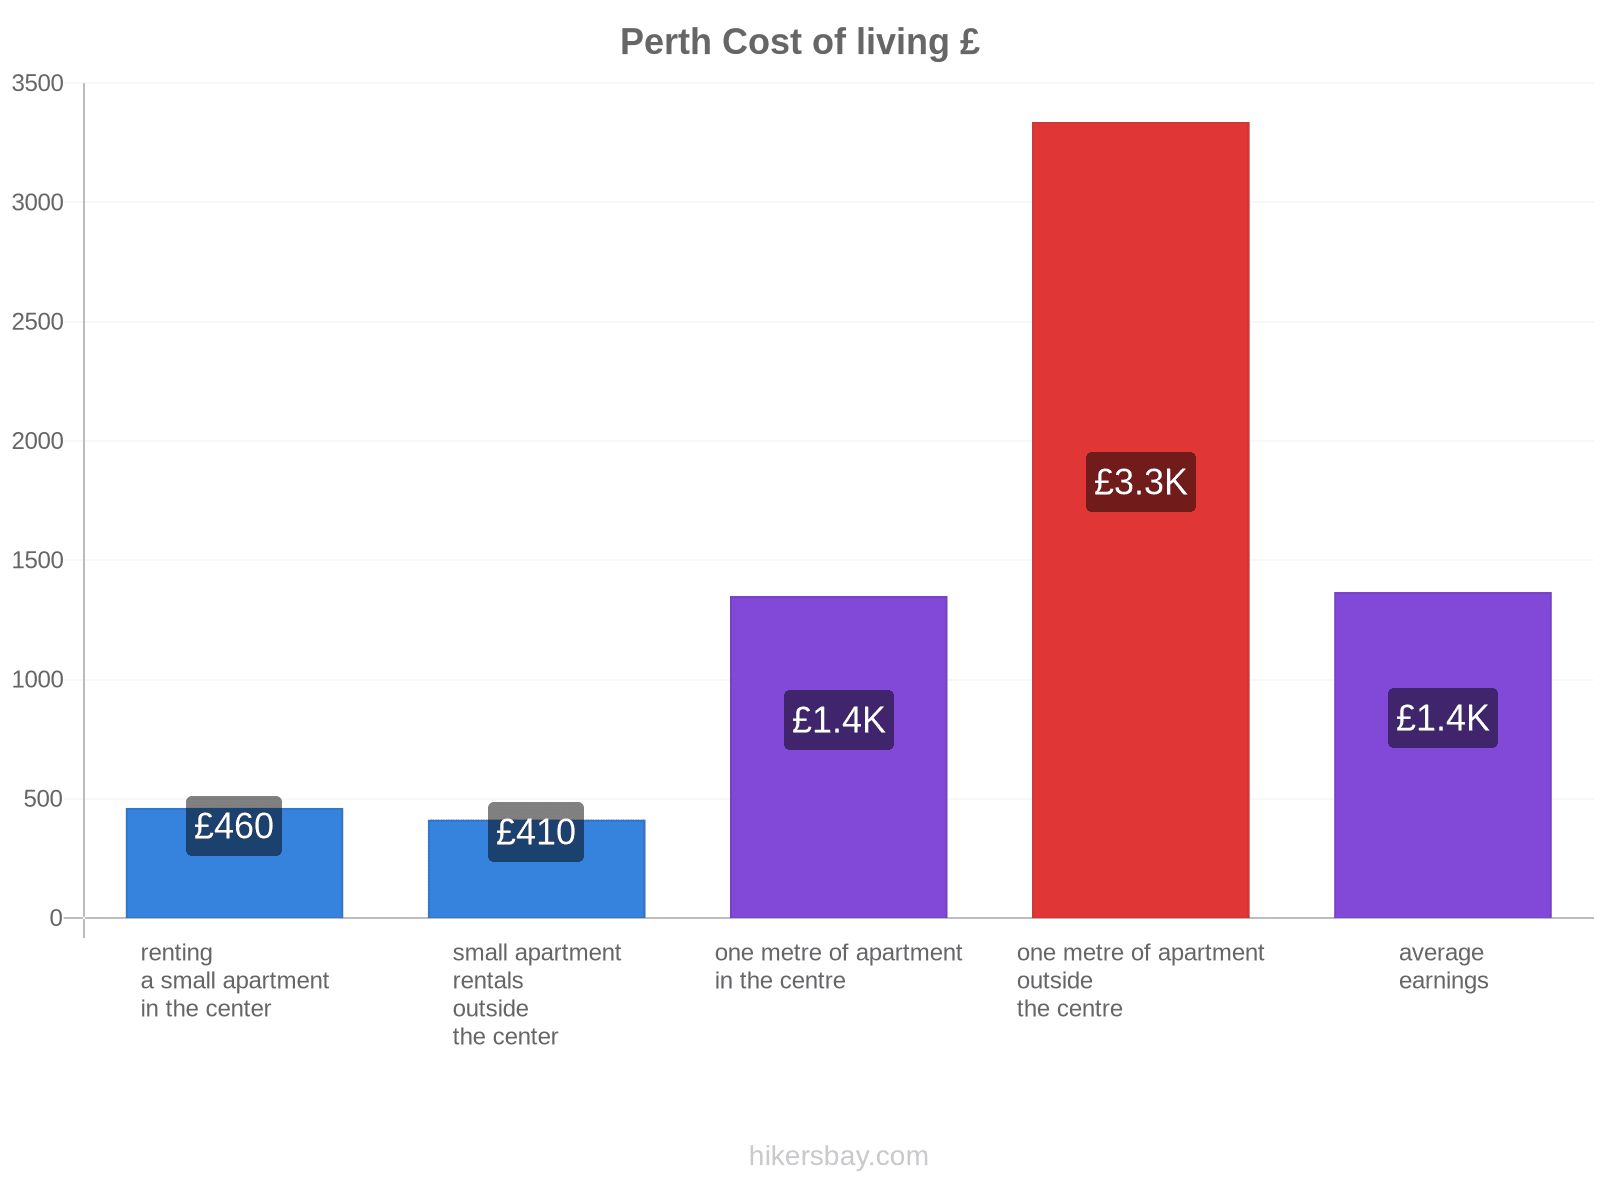 Perth cost of living hikersbay.com